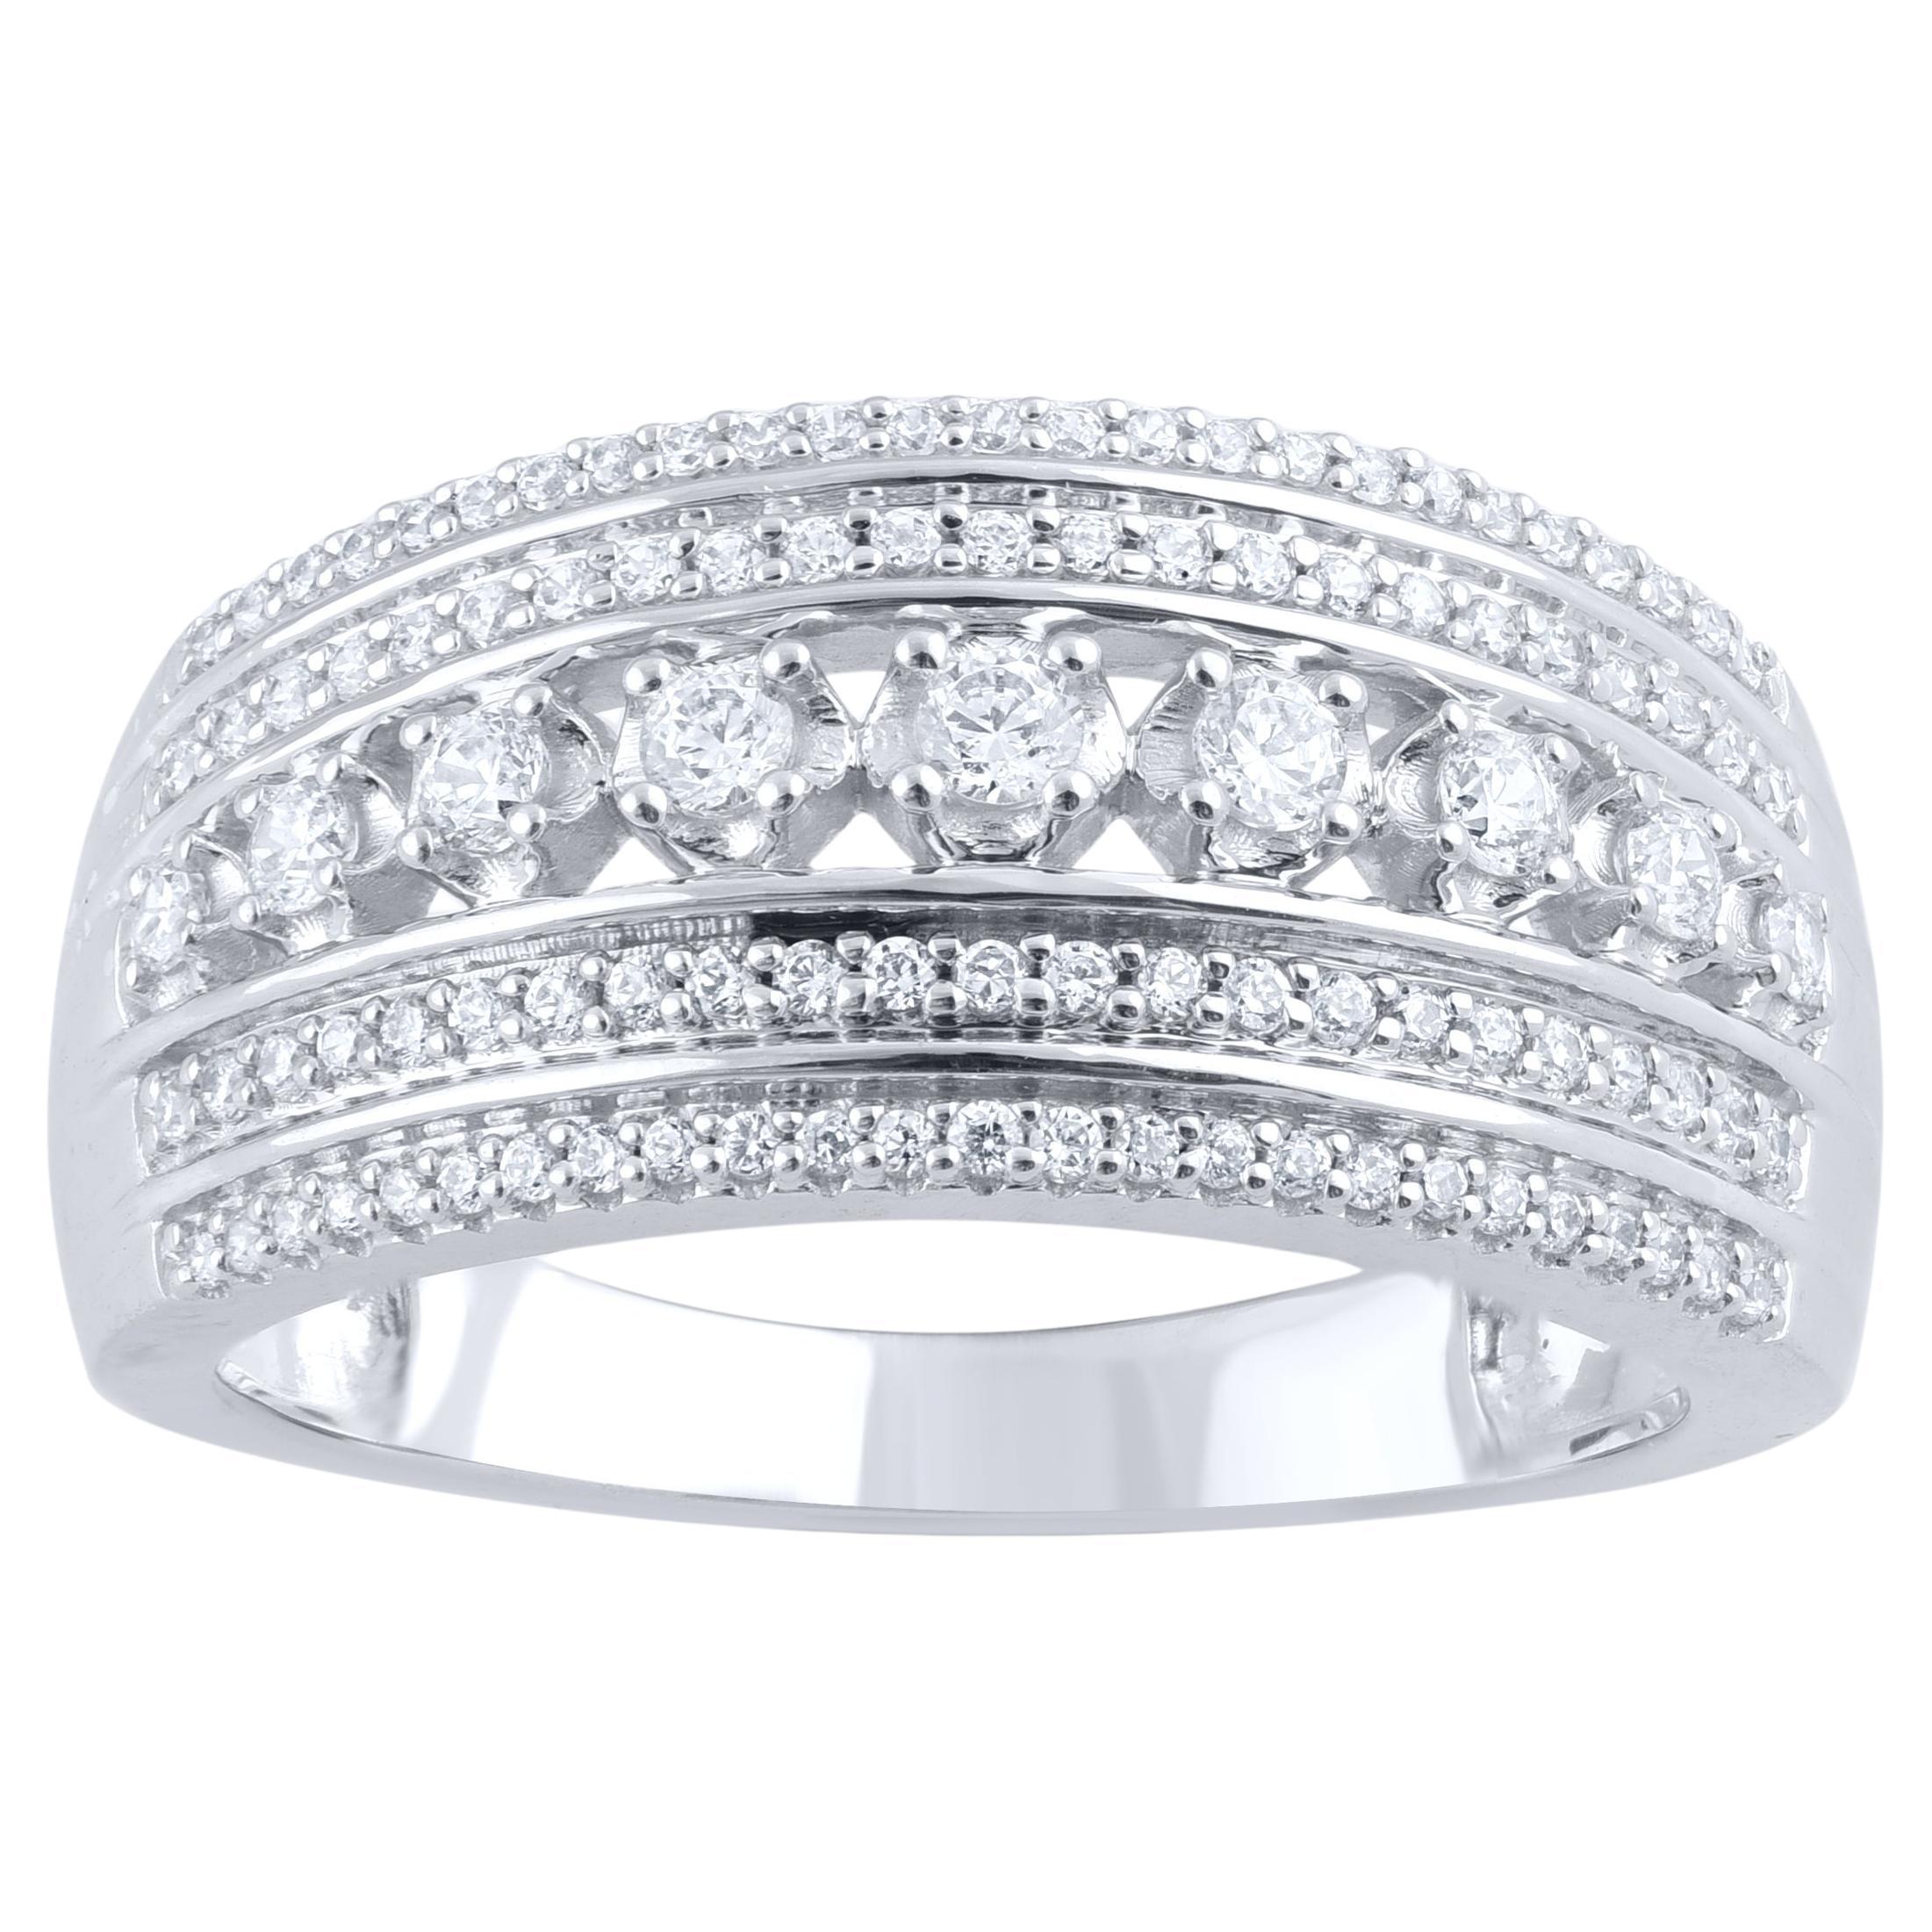 TJD 0.50 Carat Natural Diamond 14 Karat White Gold Multi Row Wedding Band Ring